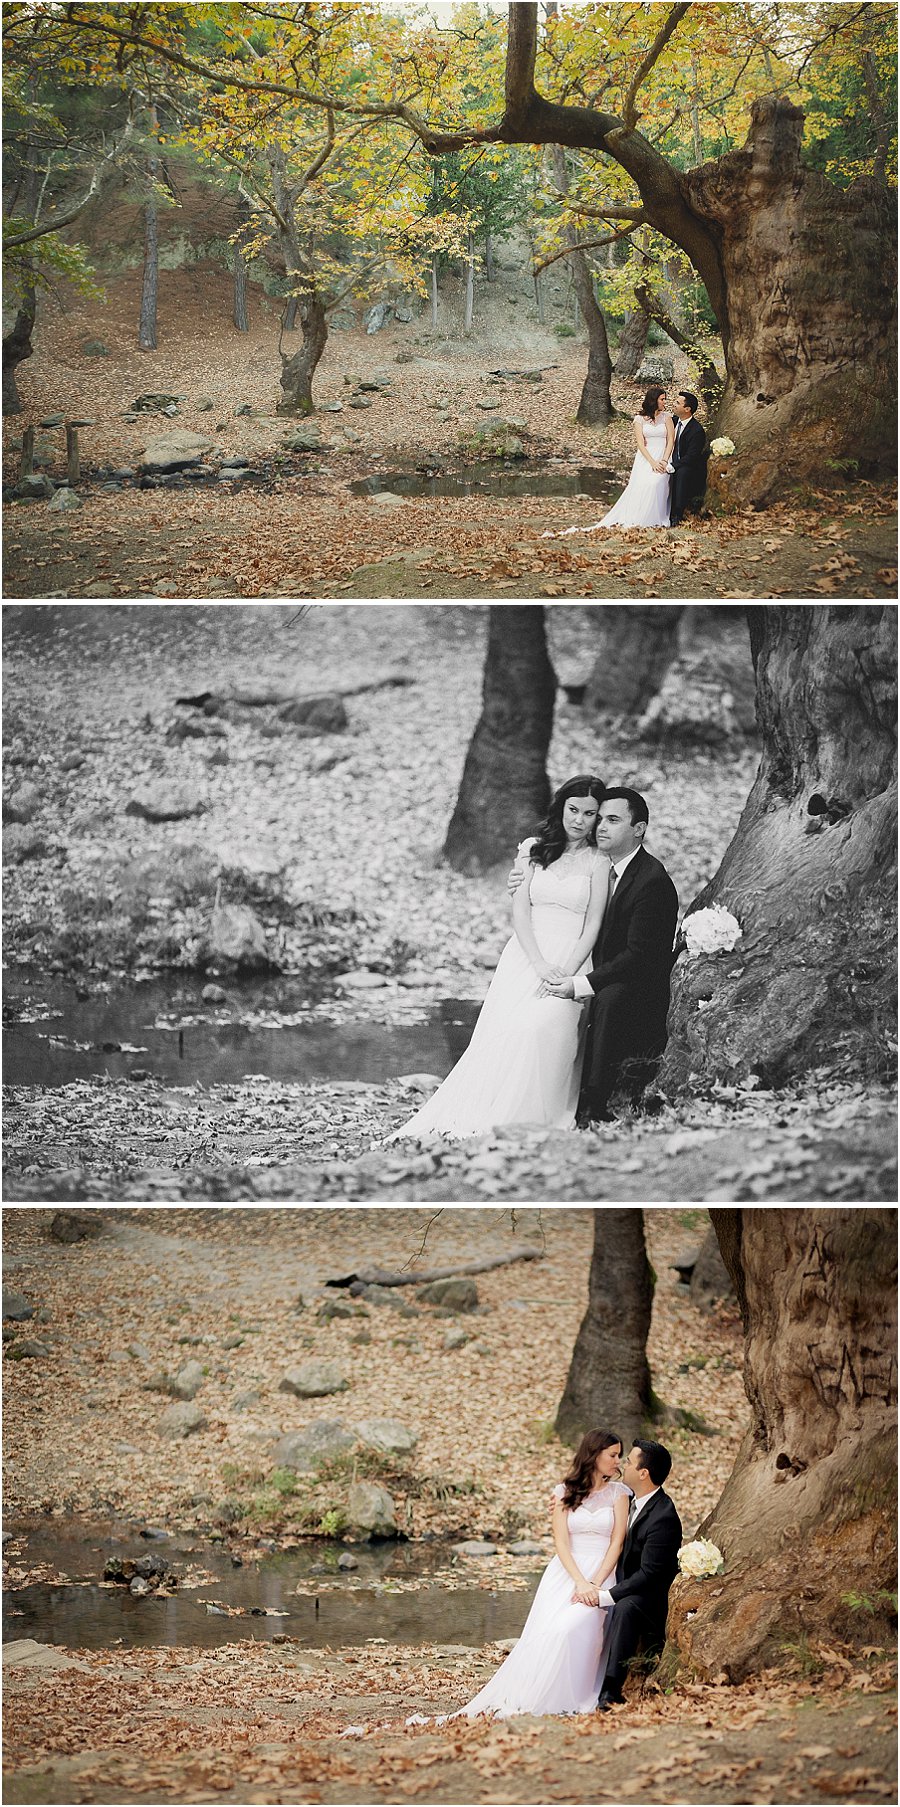 Φωτογραφηση γάμου,Πλατανακια,Θεσσαλονικη